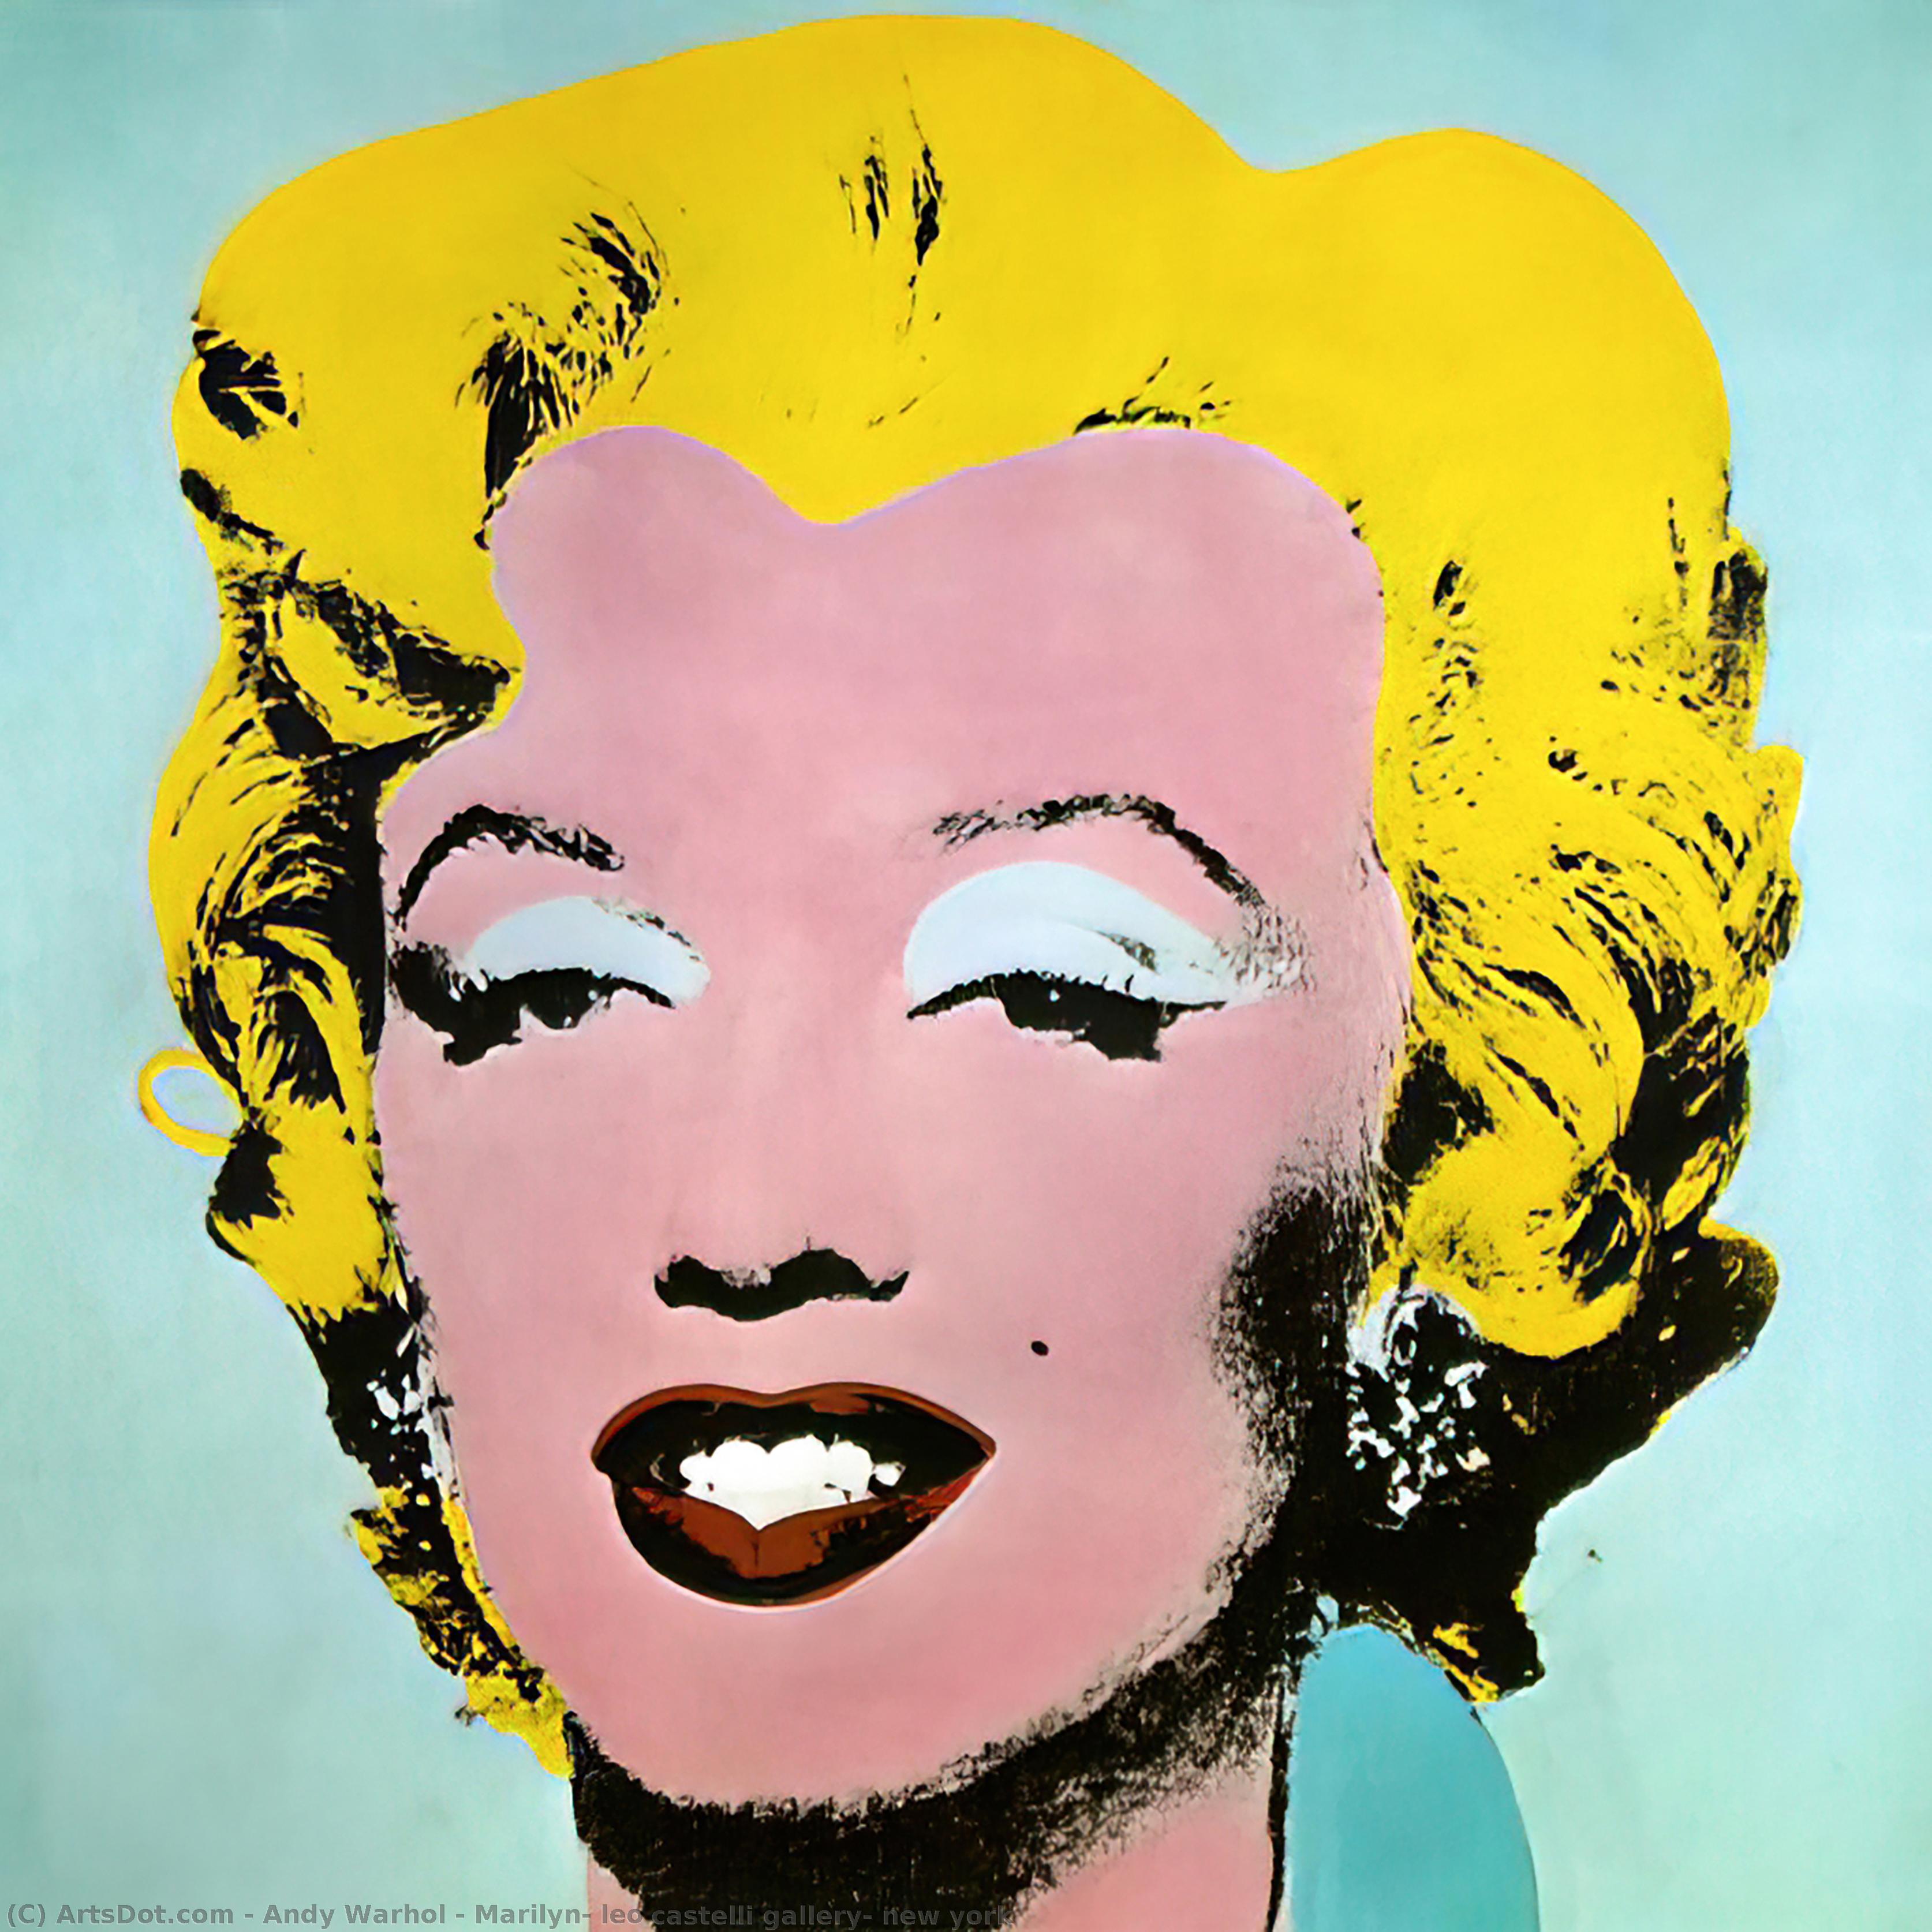 WikiOO.org - Энциклопедия изобразительного искусства - Живопись, Картины  Andy Warhol - Мэрилин Лео  кастелли  галерея  новый  Йорк